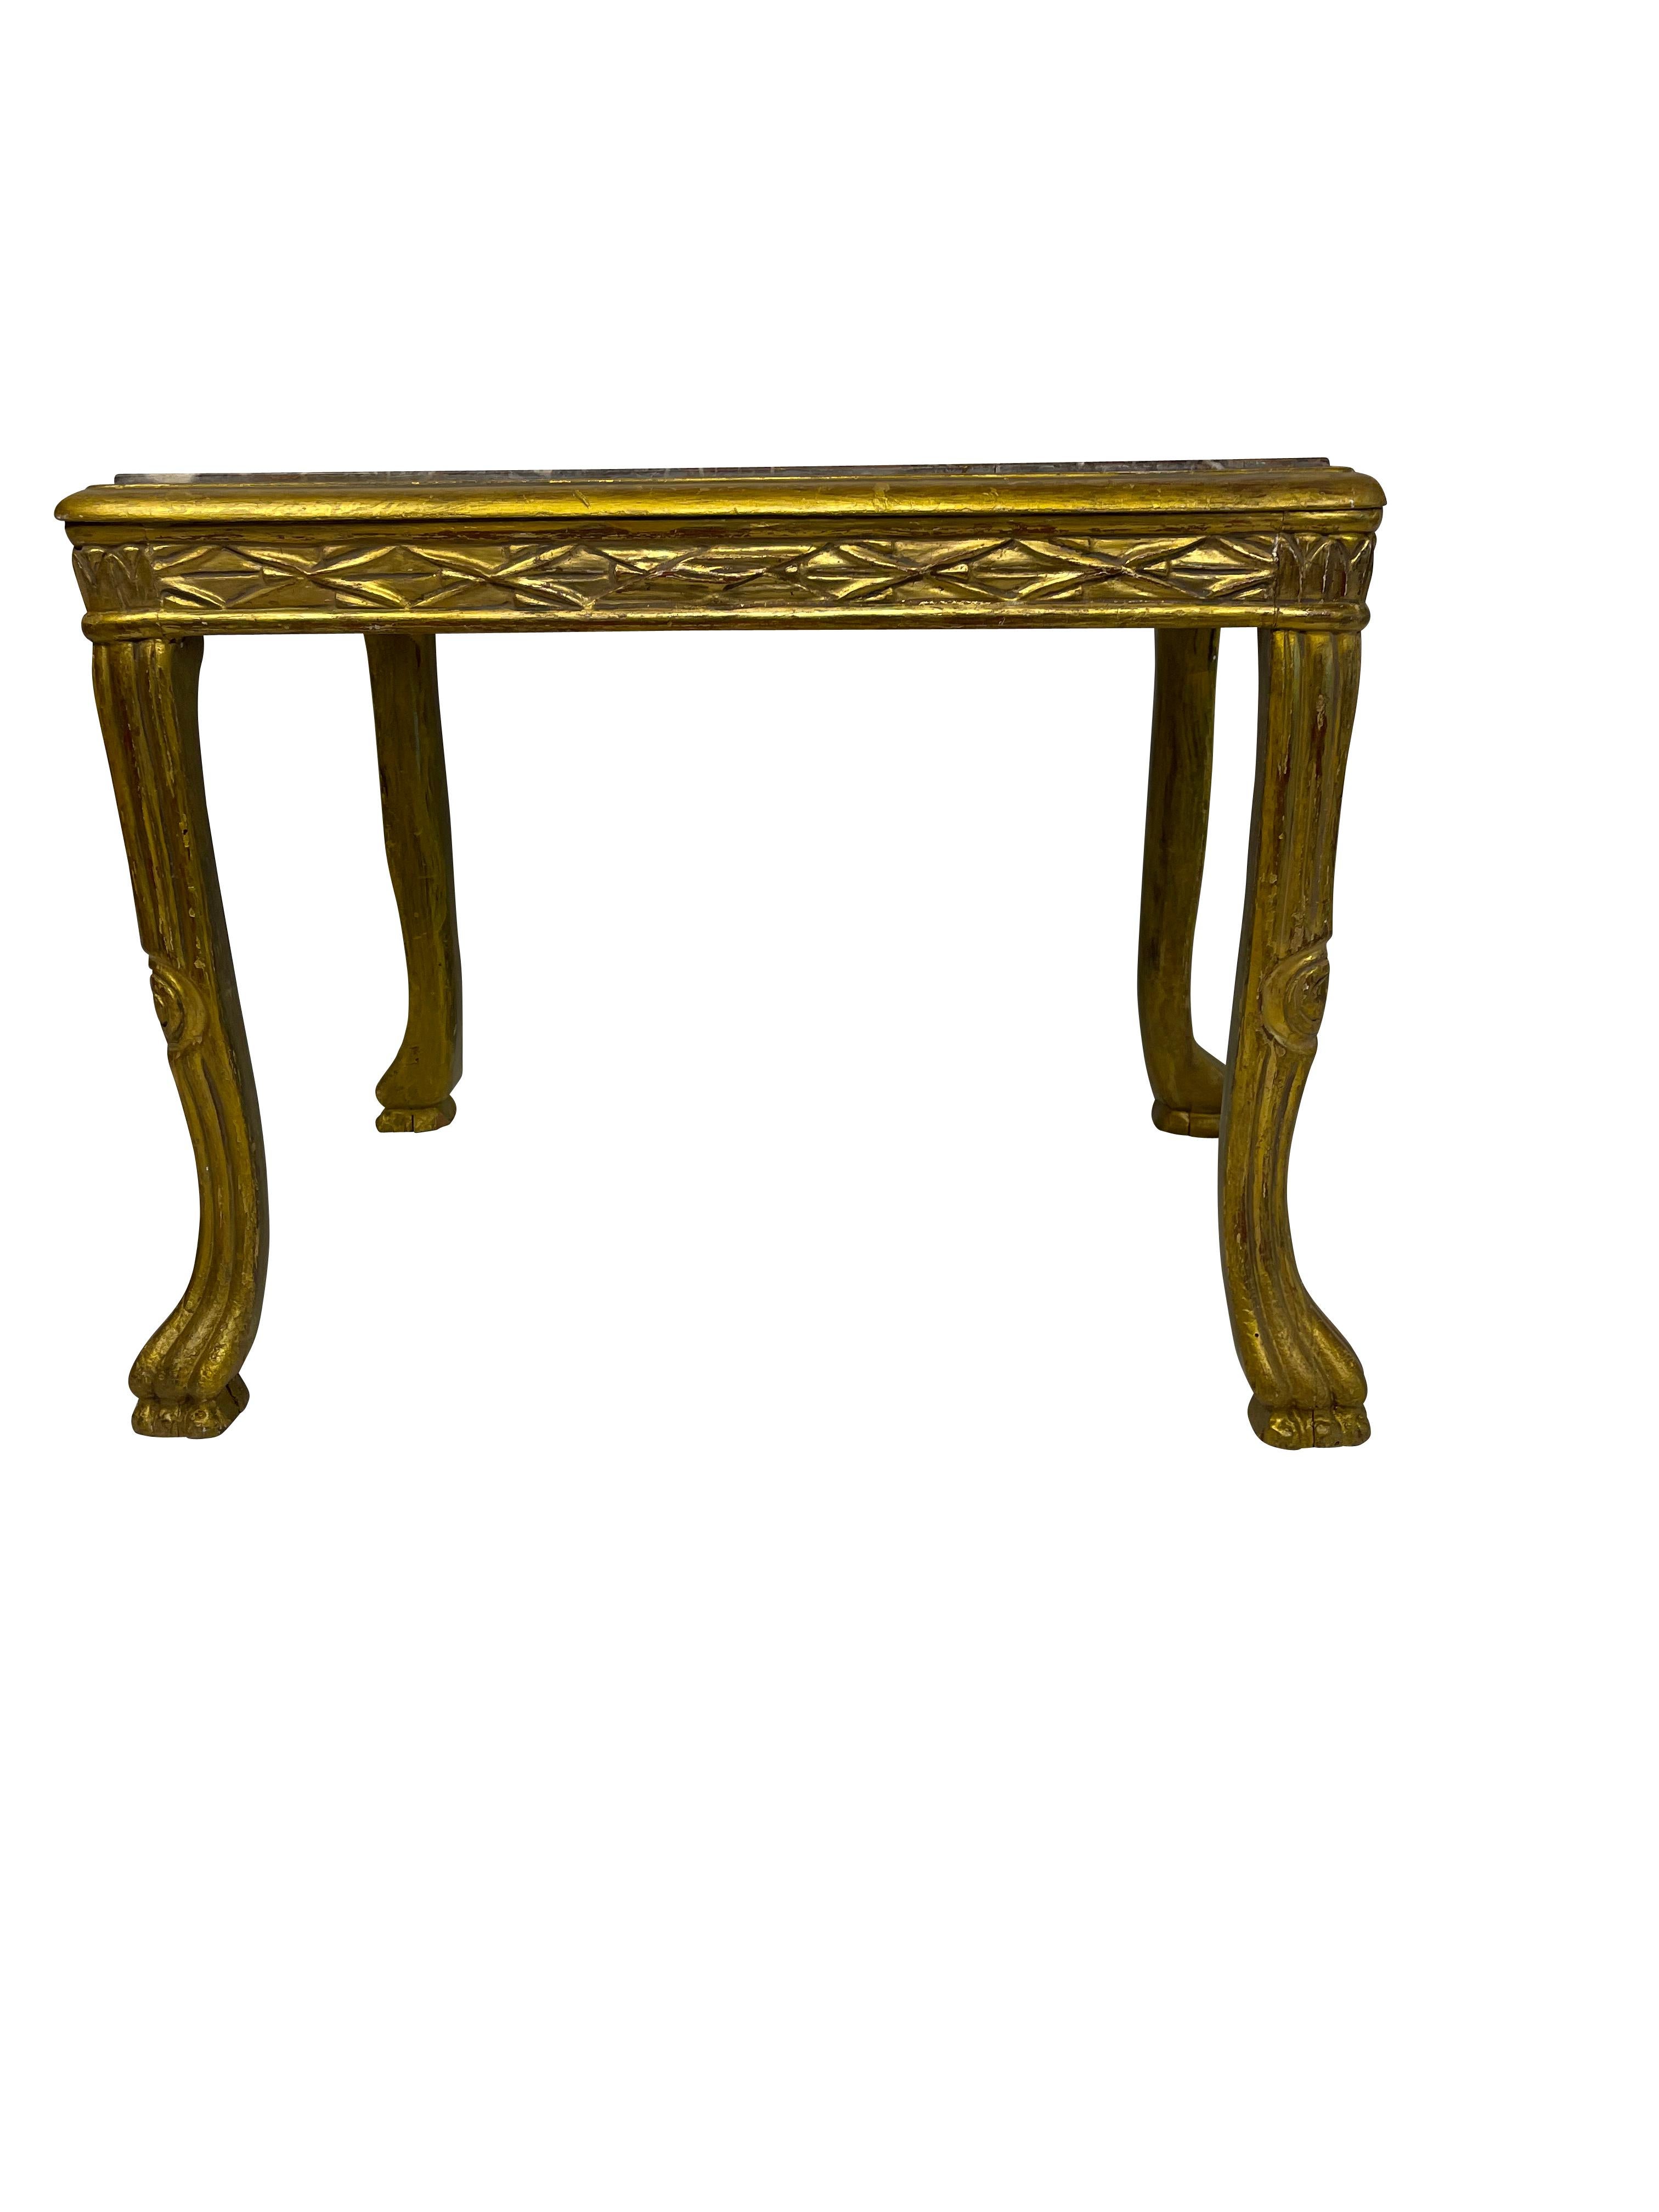 Hochdekorativer kleiner vergoldeter Beistelltisch im Louis XV-Stil mit grauer Marmorplatte, geschnitzten Beinen, die in Tatzenfüßen enden, und umfangreichen Schnitzereien.
Maße: 20 1/2